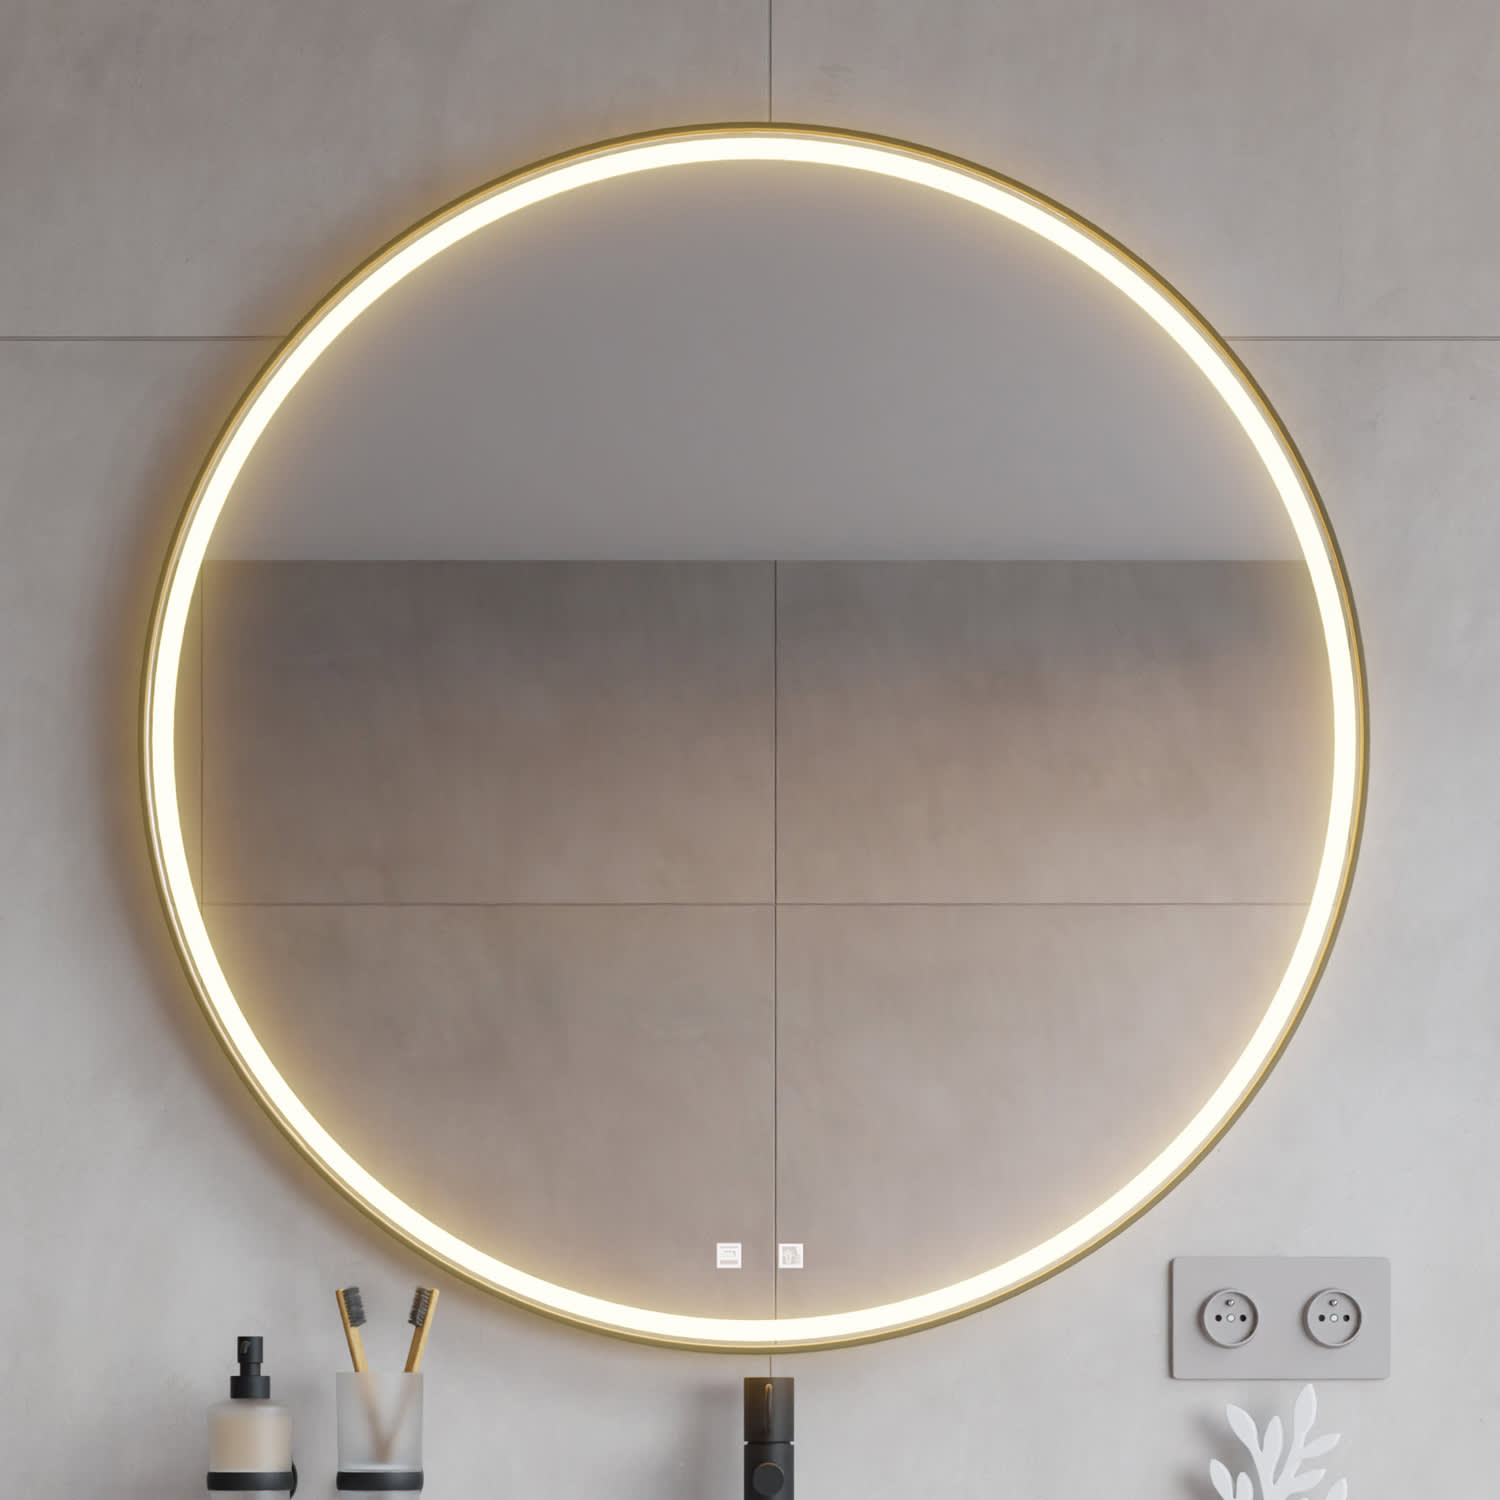 LED Lichtspiegel Badspiegel 2805 mit Spiegelheizung & Warm